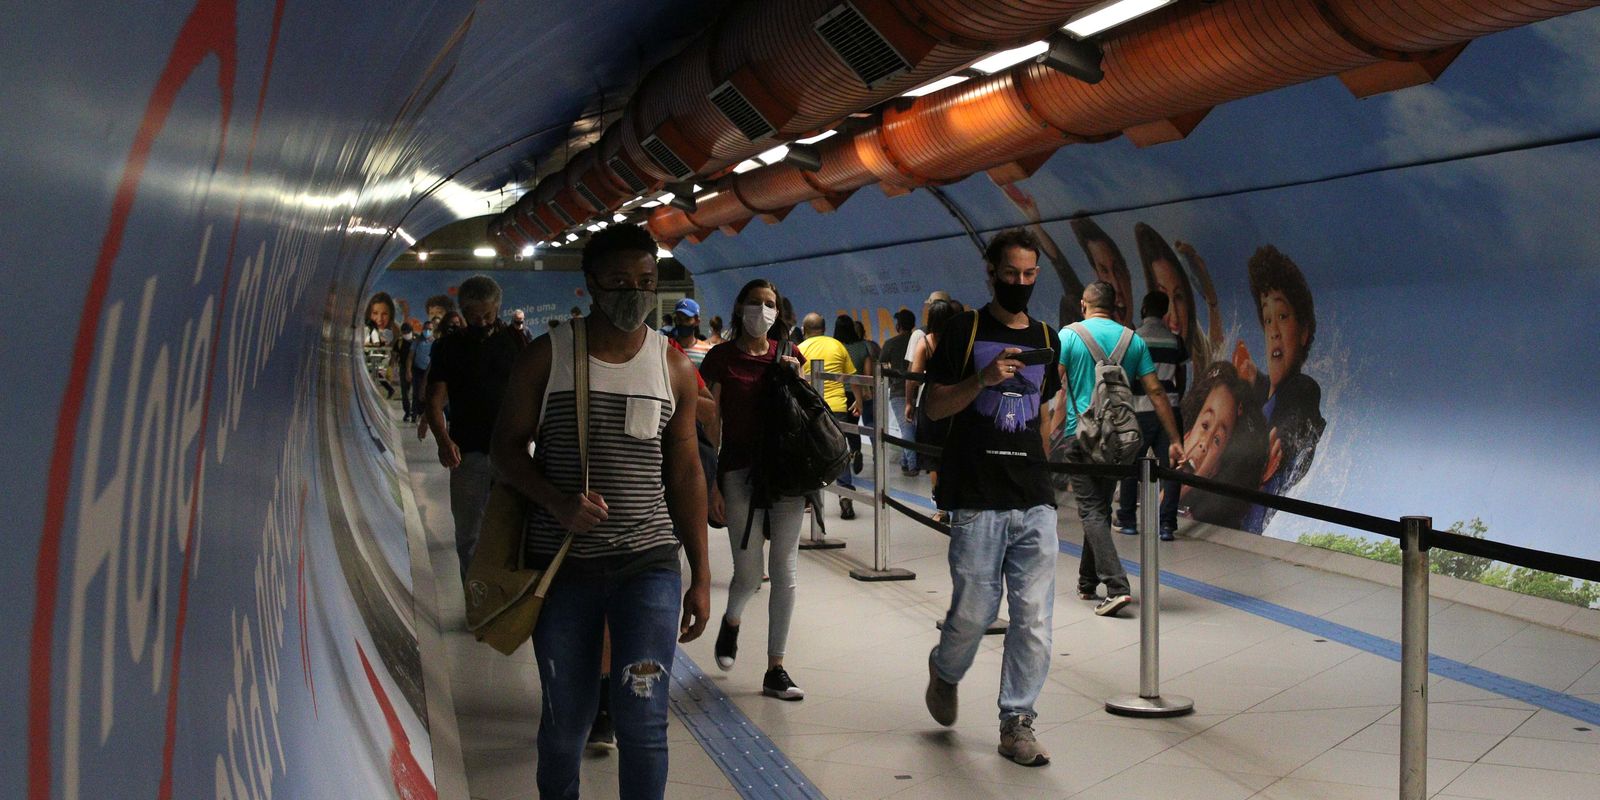 Usuários do transporte público na passagem subterrânea entre as estações Consolação e Paulista do metrô durante a fase emergencial da pandemia de covid-19.